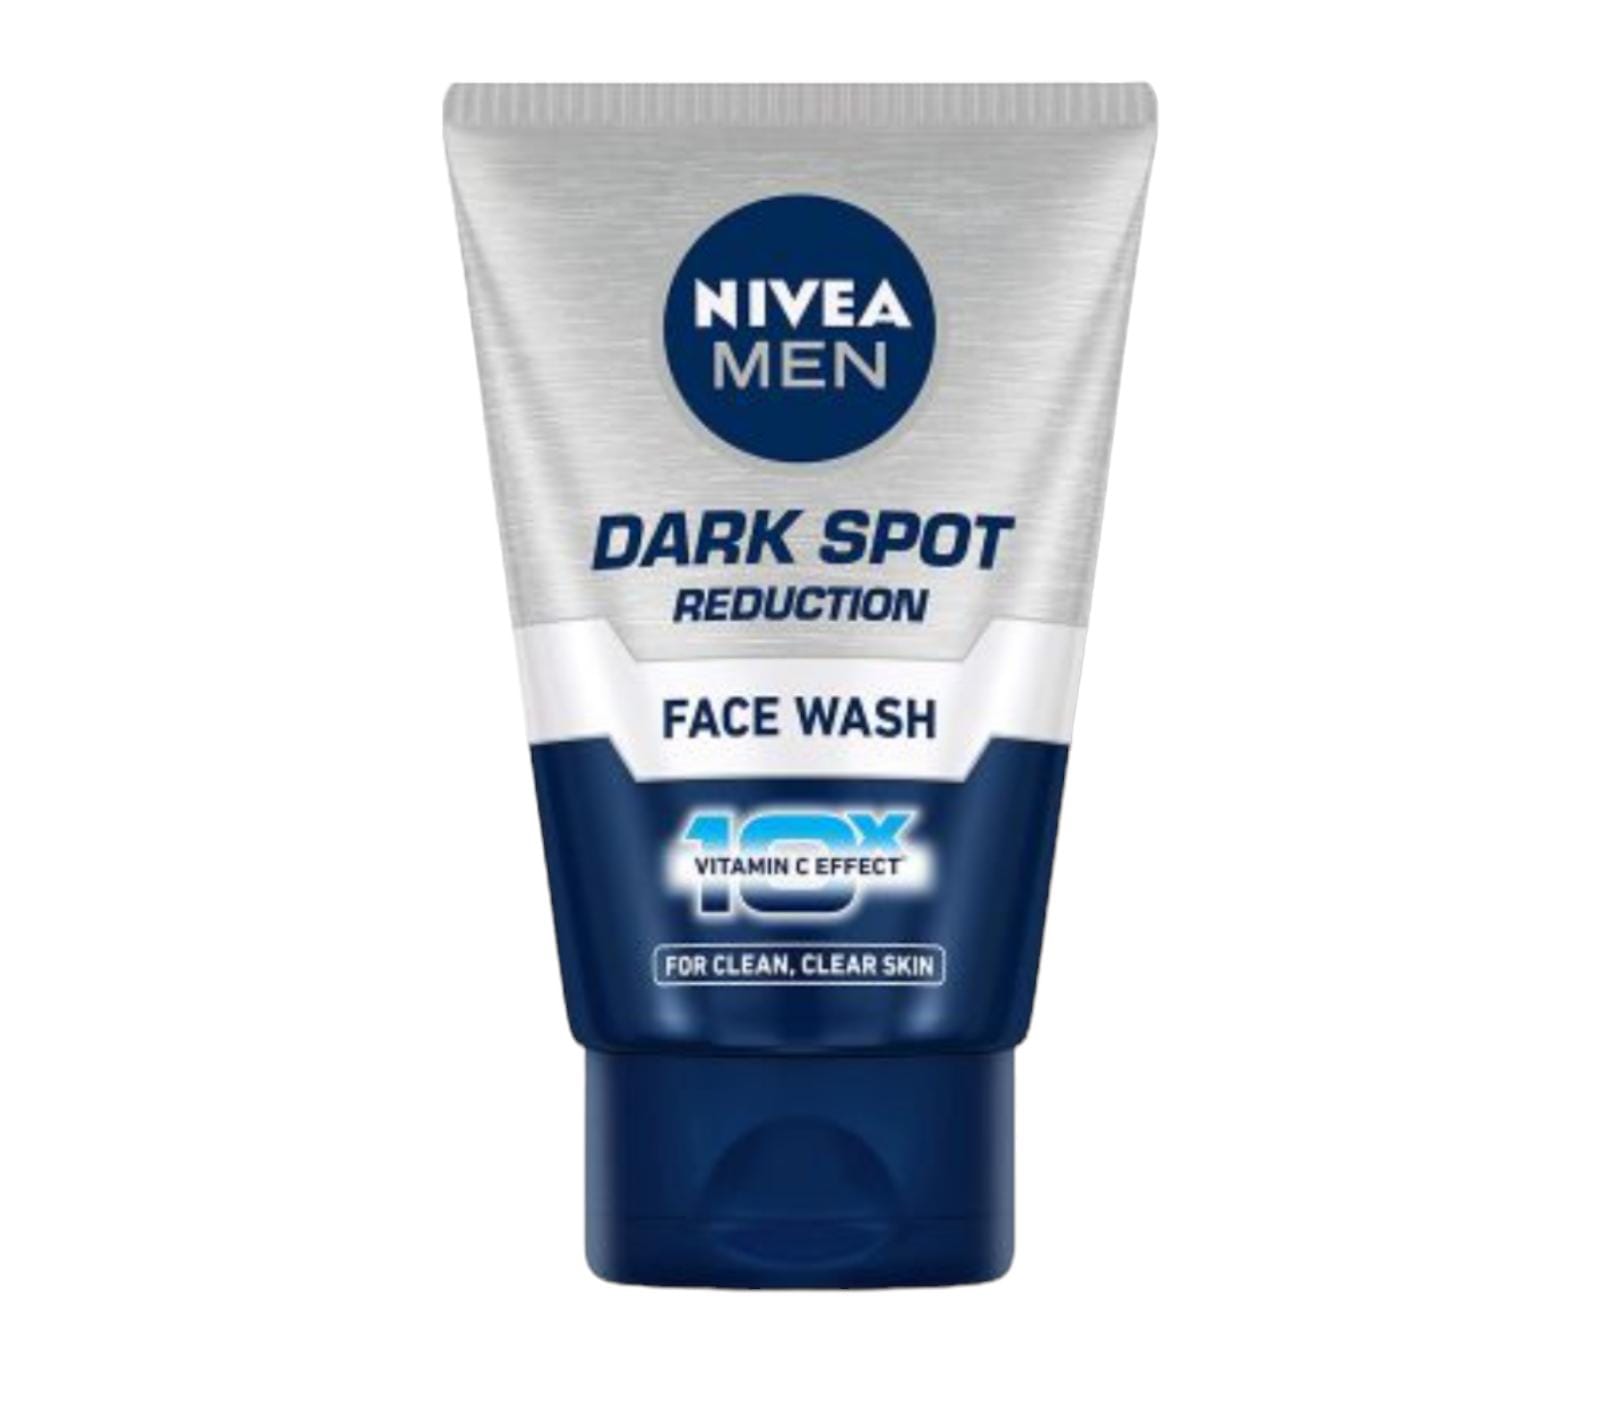 Nivea Dark Spot face wash